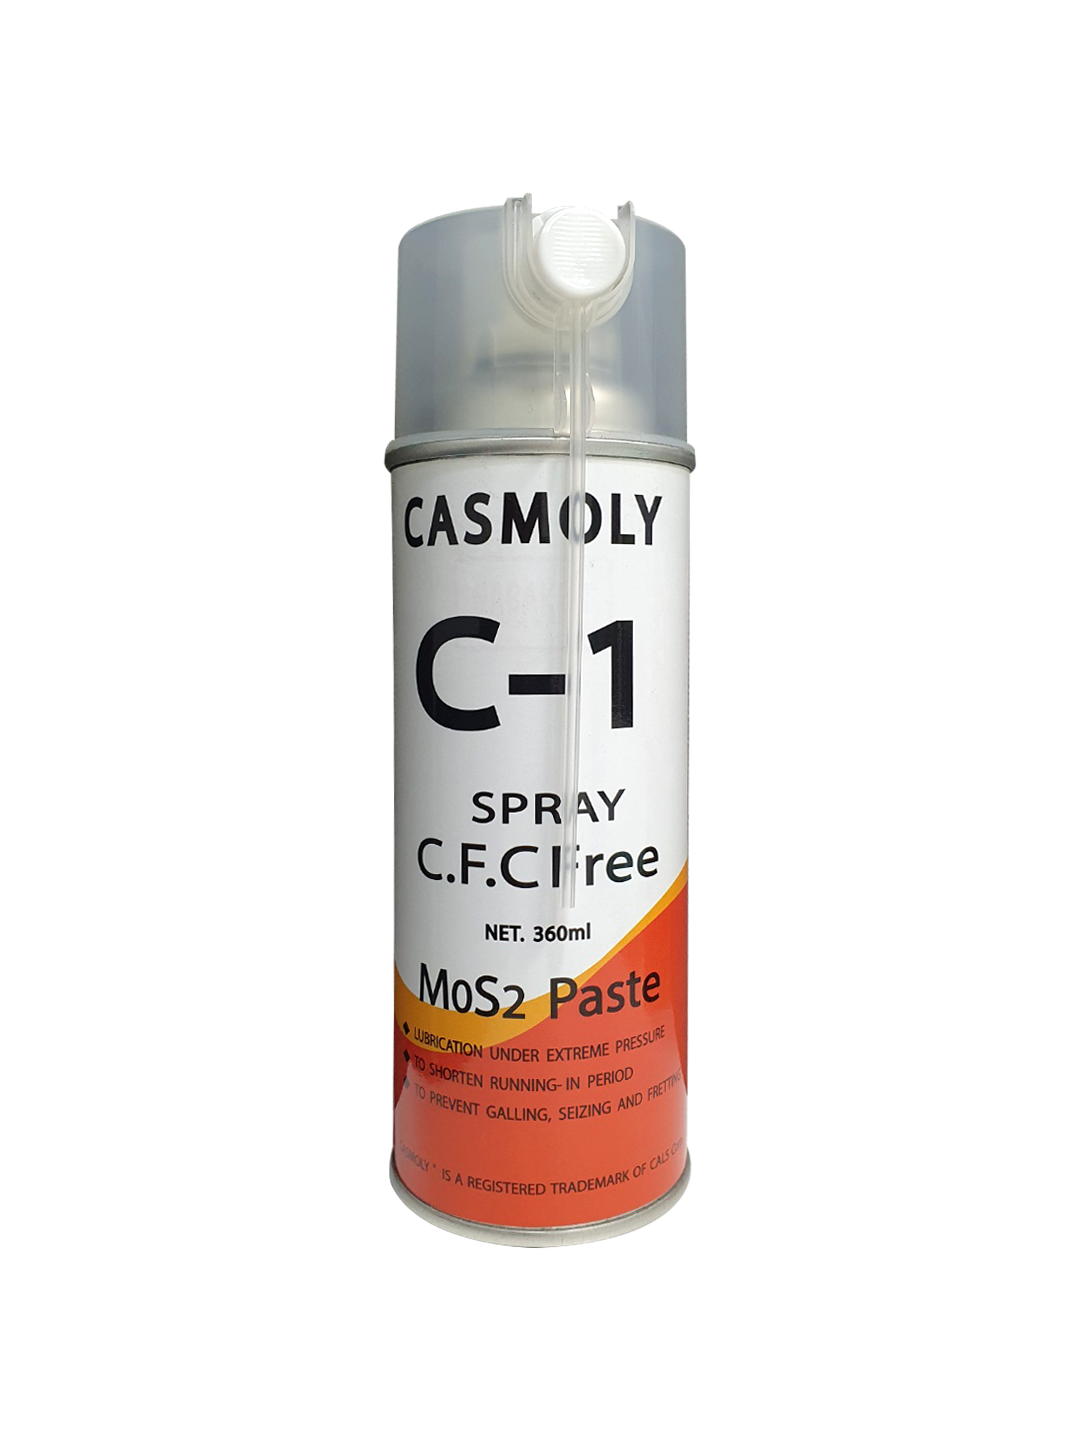 MoS2 paste CASMOLY C-1 SPRAY